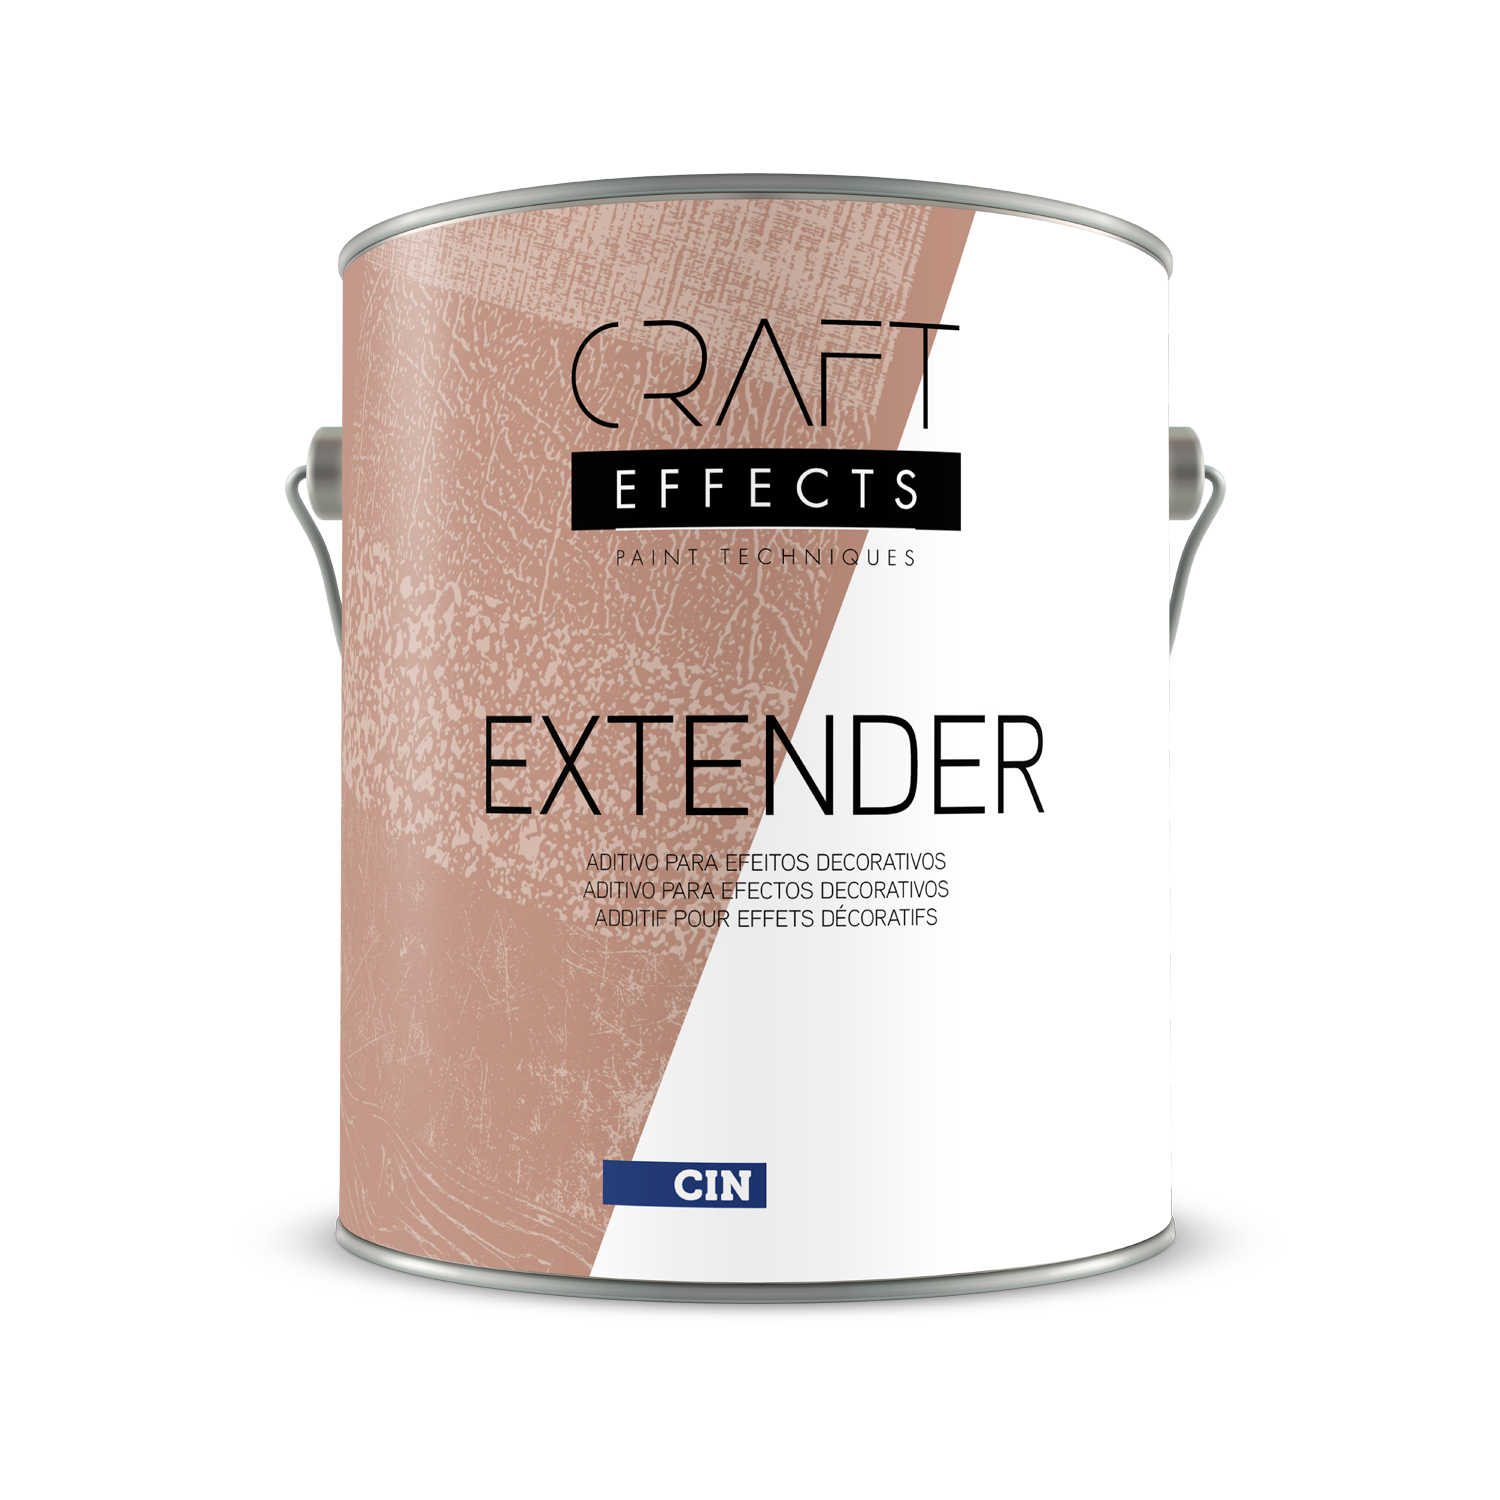 Craft Effects Extender